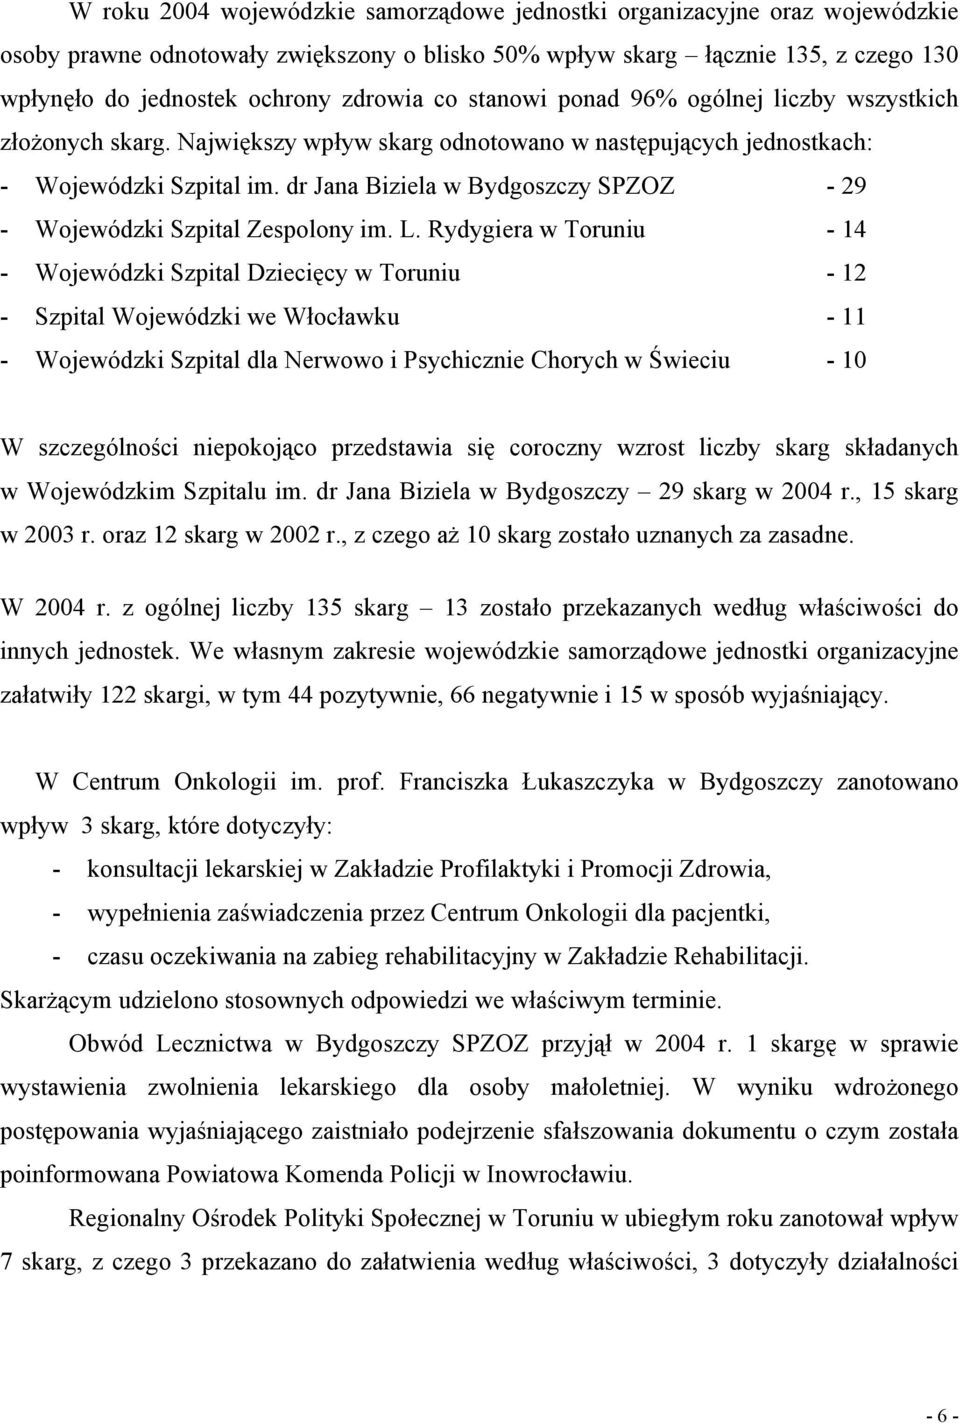 dr Jana Biziela w Bydgoszczy SPZOZ - 29 - Wojewódzki Szpital Zespolony im. L.